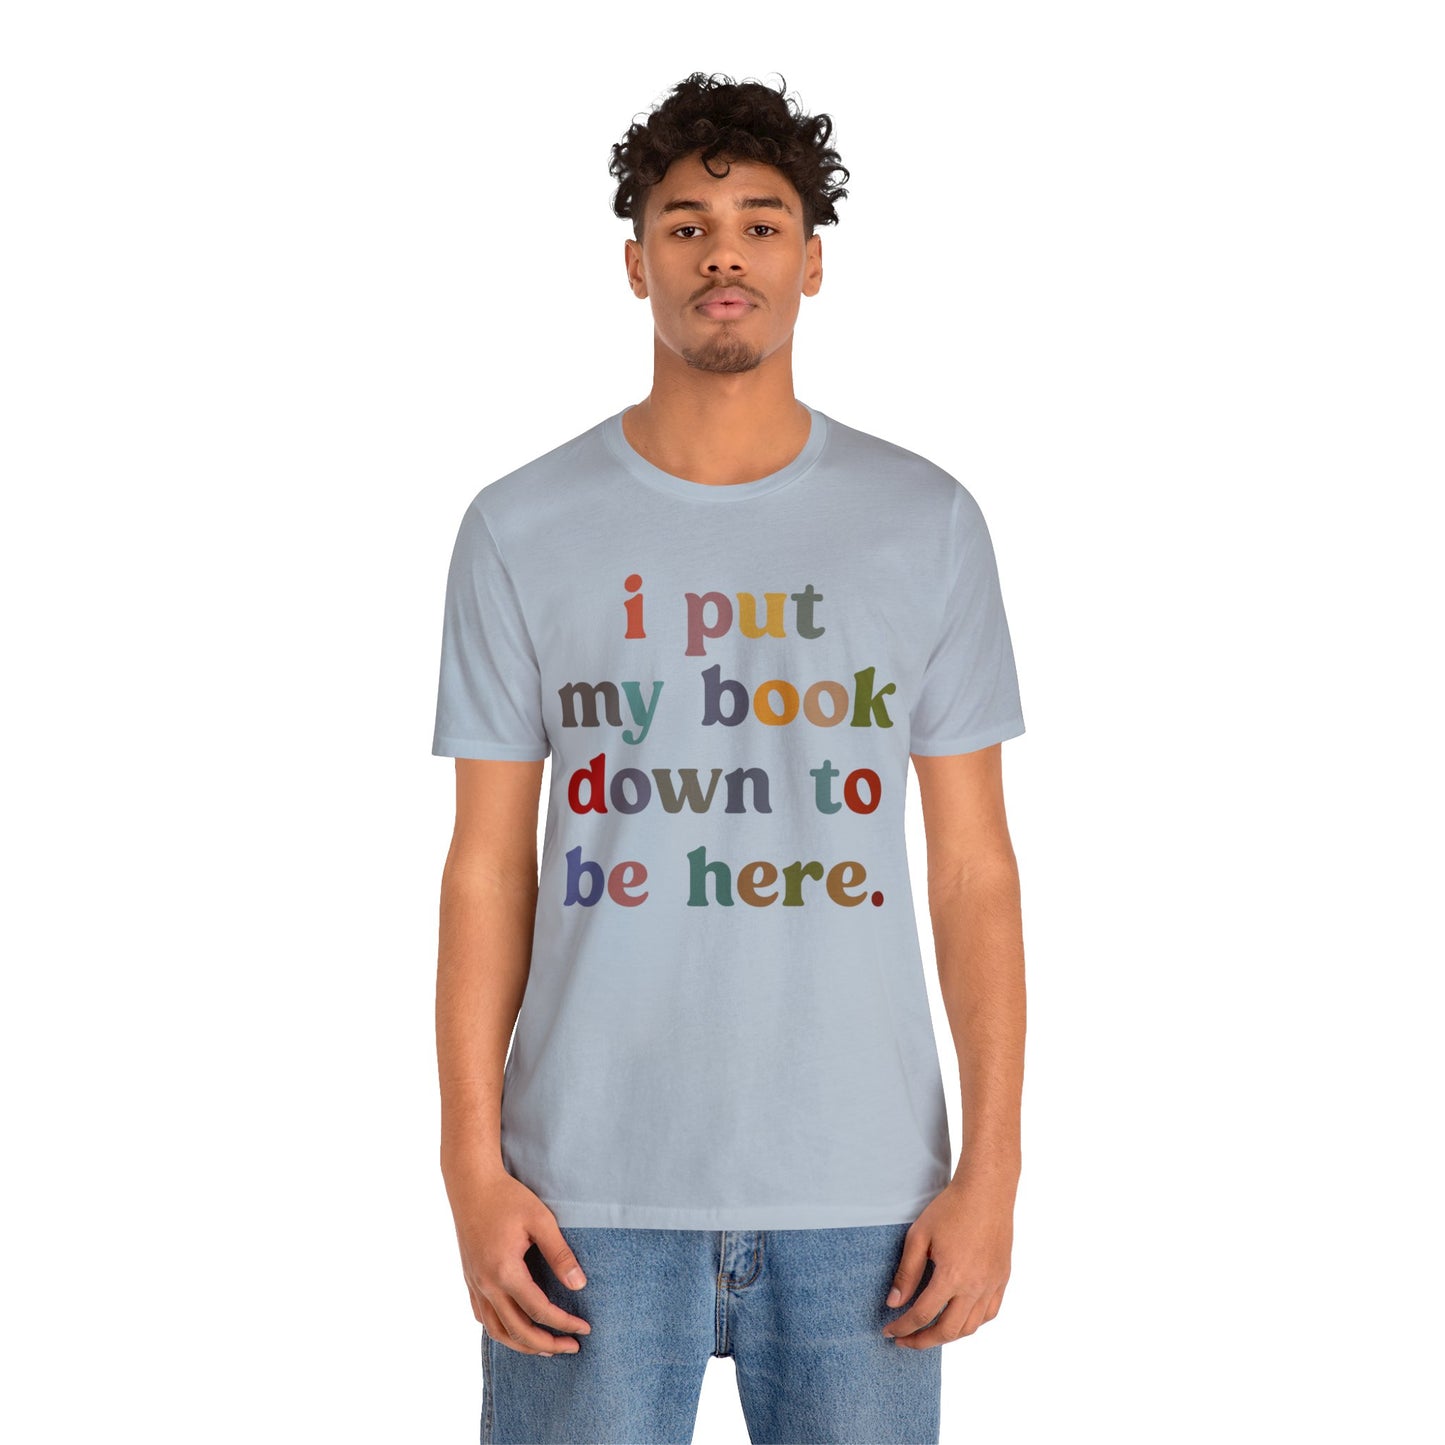 I Put My Book Down To Be Here Shirt, Bookworm Gift, Librarian Shirt, Shirt for Teacher, Book Lovers Club Shirt, Book Nerd Shirt, T1223